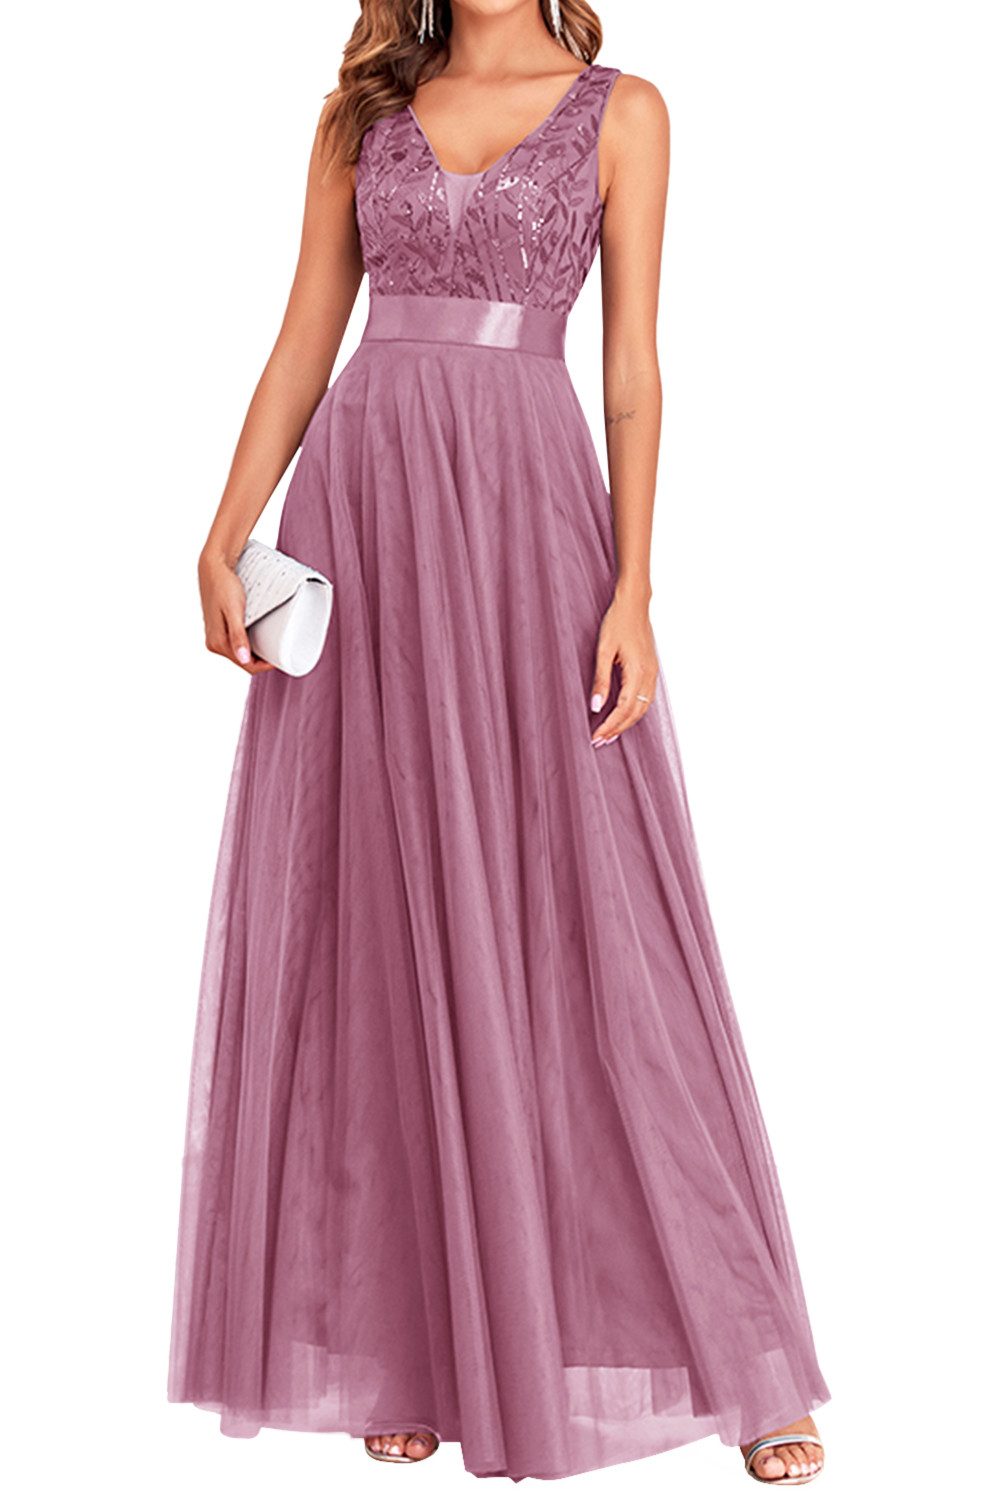 ENIX Abendkleid Damen-Abendkleid mit Pailletten ärmellos Tüll lang schmal Kleid in A-Linie mit tiefem V-Ausschnitt und elastischem Bund